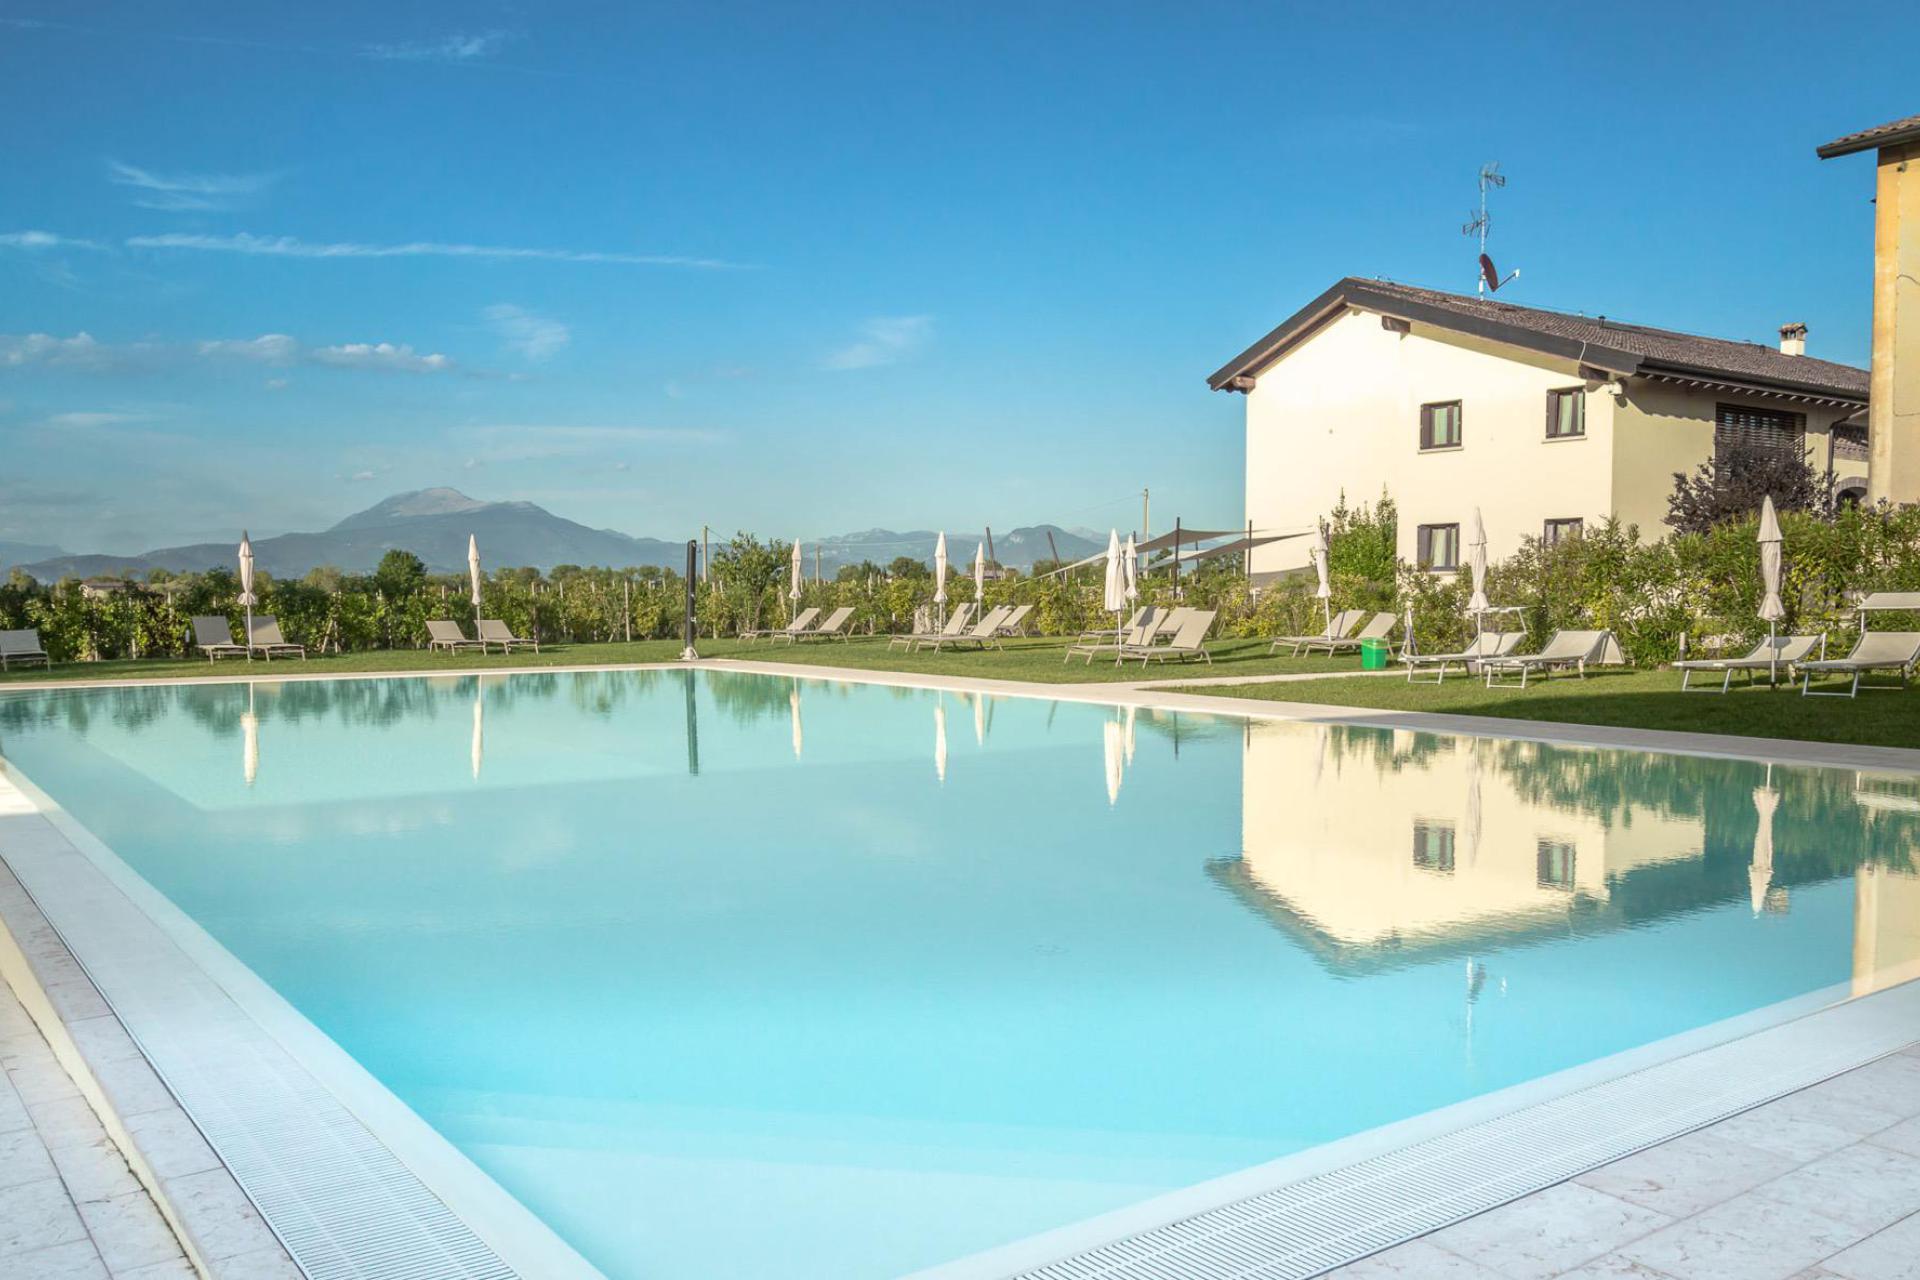 Agriturismo with family apartments on Lake Garda